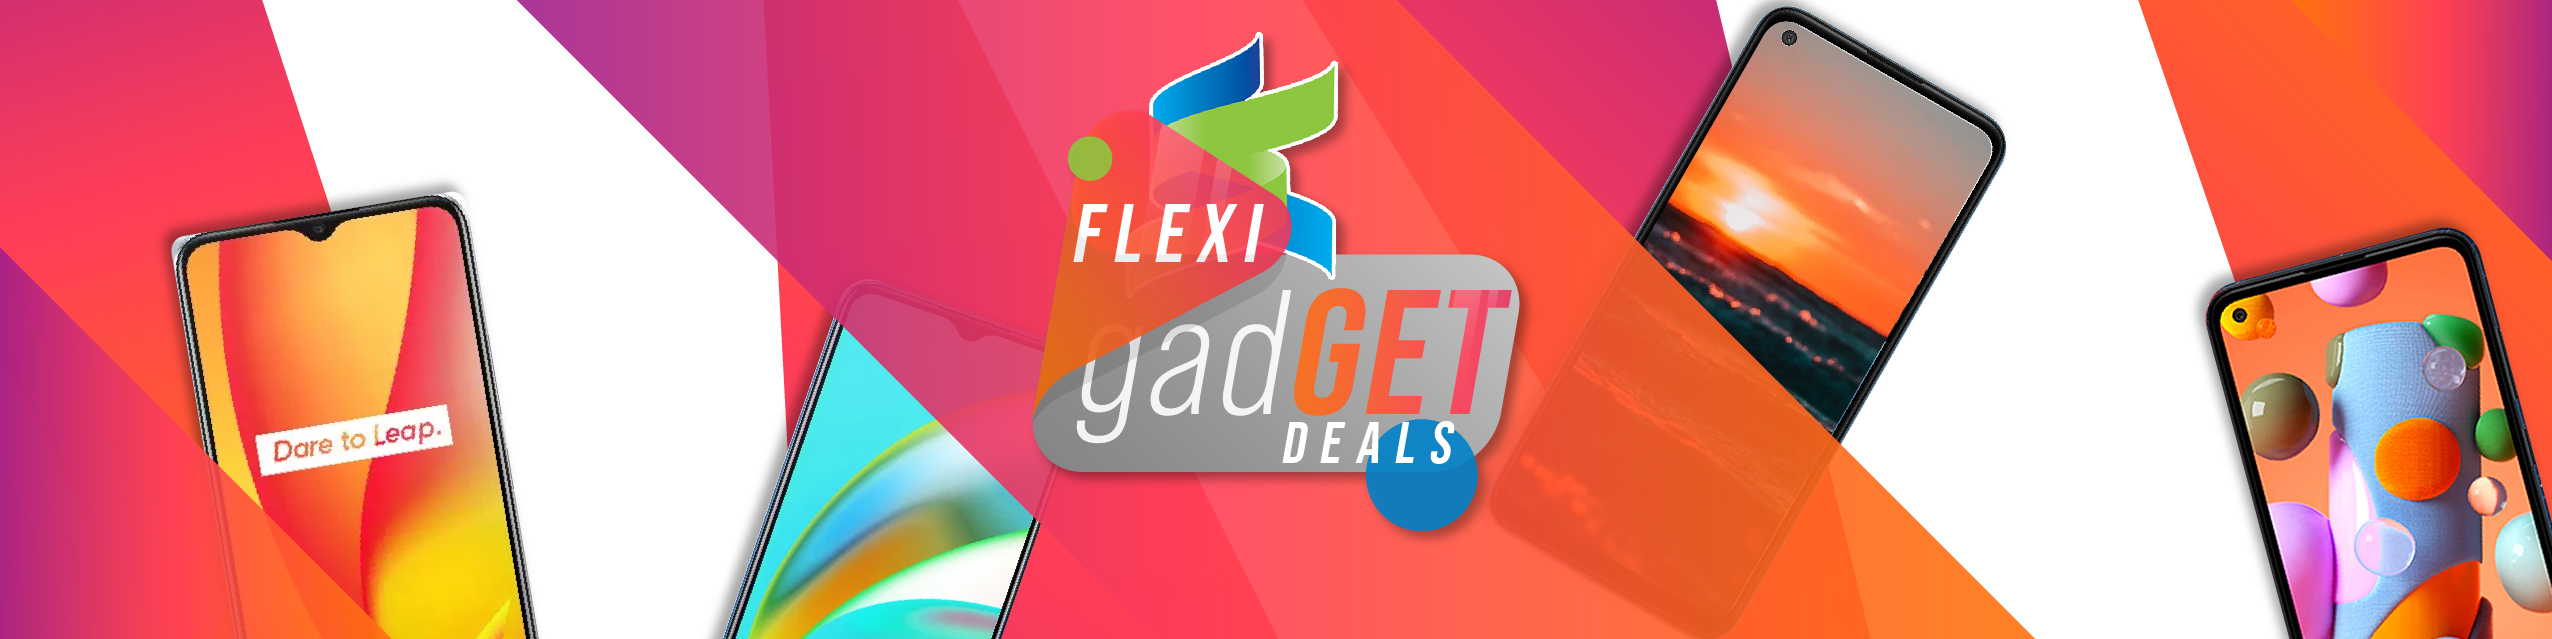 Flexi GadGET Deals